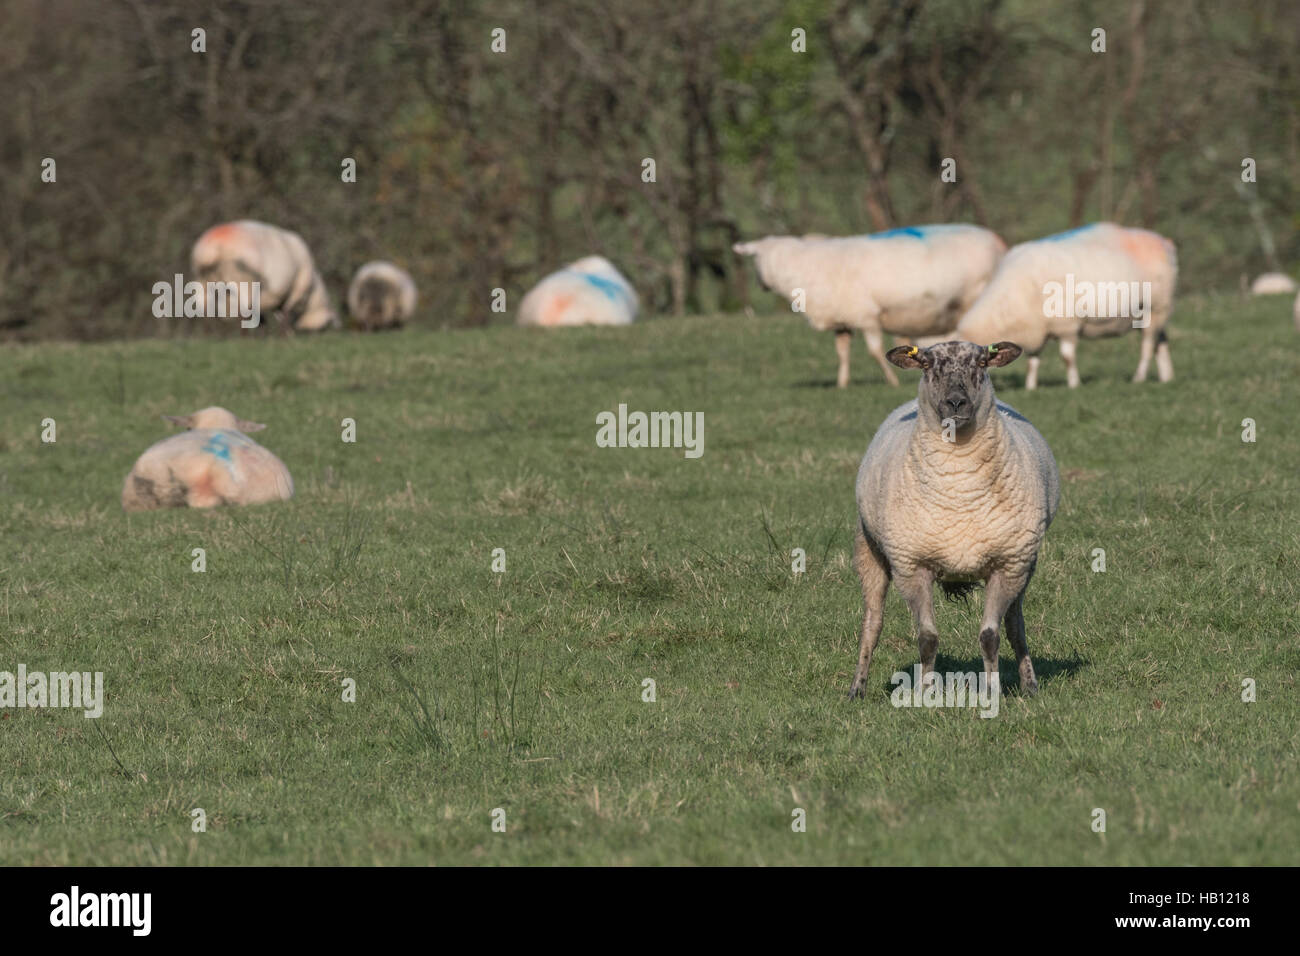 Kleines Teil einer Herde Schafe Texel-Suffolk gekreuzt. Als mögliche Metapher für Herdentrieb, Schafe, Kunden-, die Nahrungsmittel- und Herdenverhalten. Stockfoto